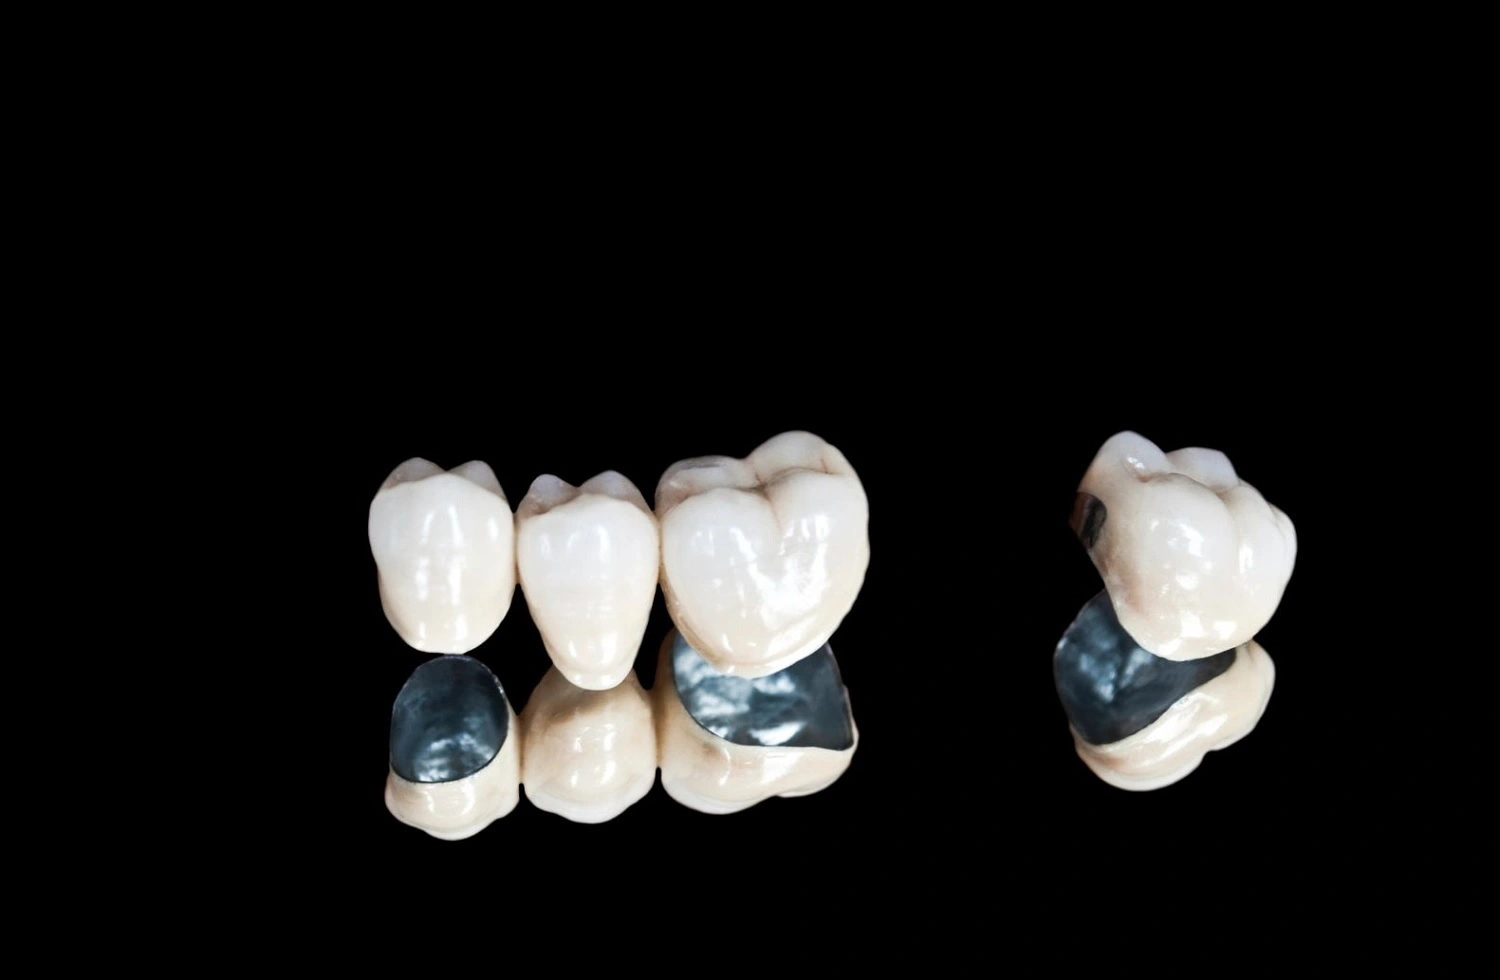 close-up-dental-crowns-on-black-background